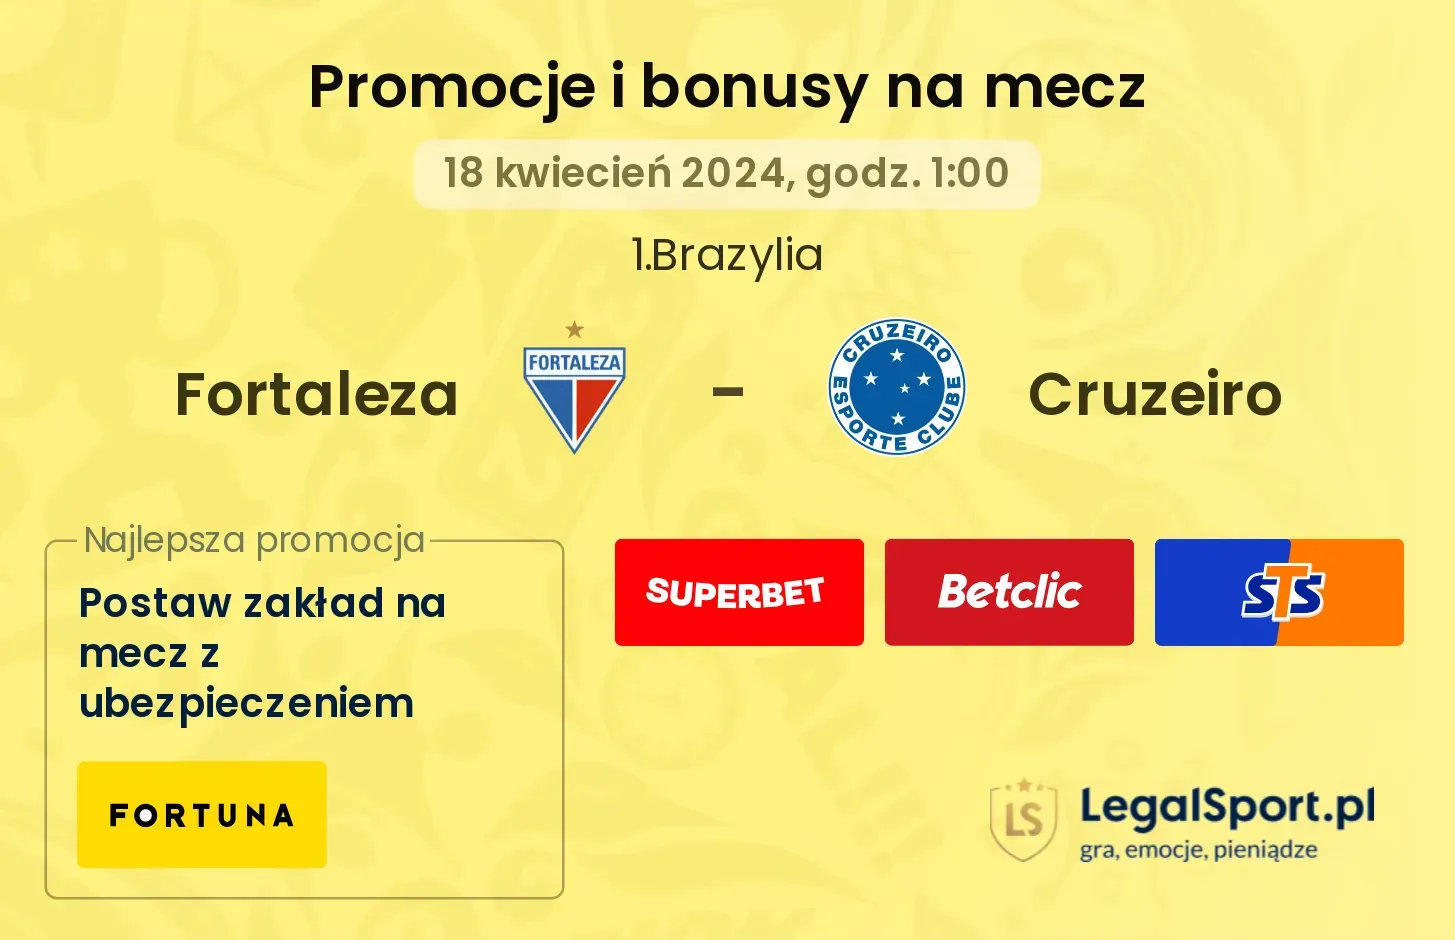 Fortaleza - Cruzeiro promocje bonusy na mecz